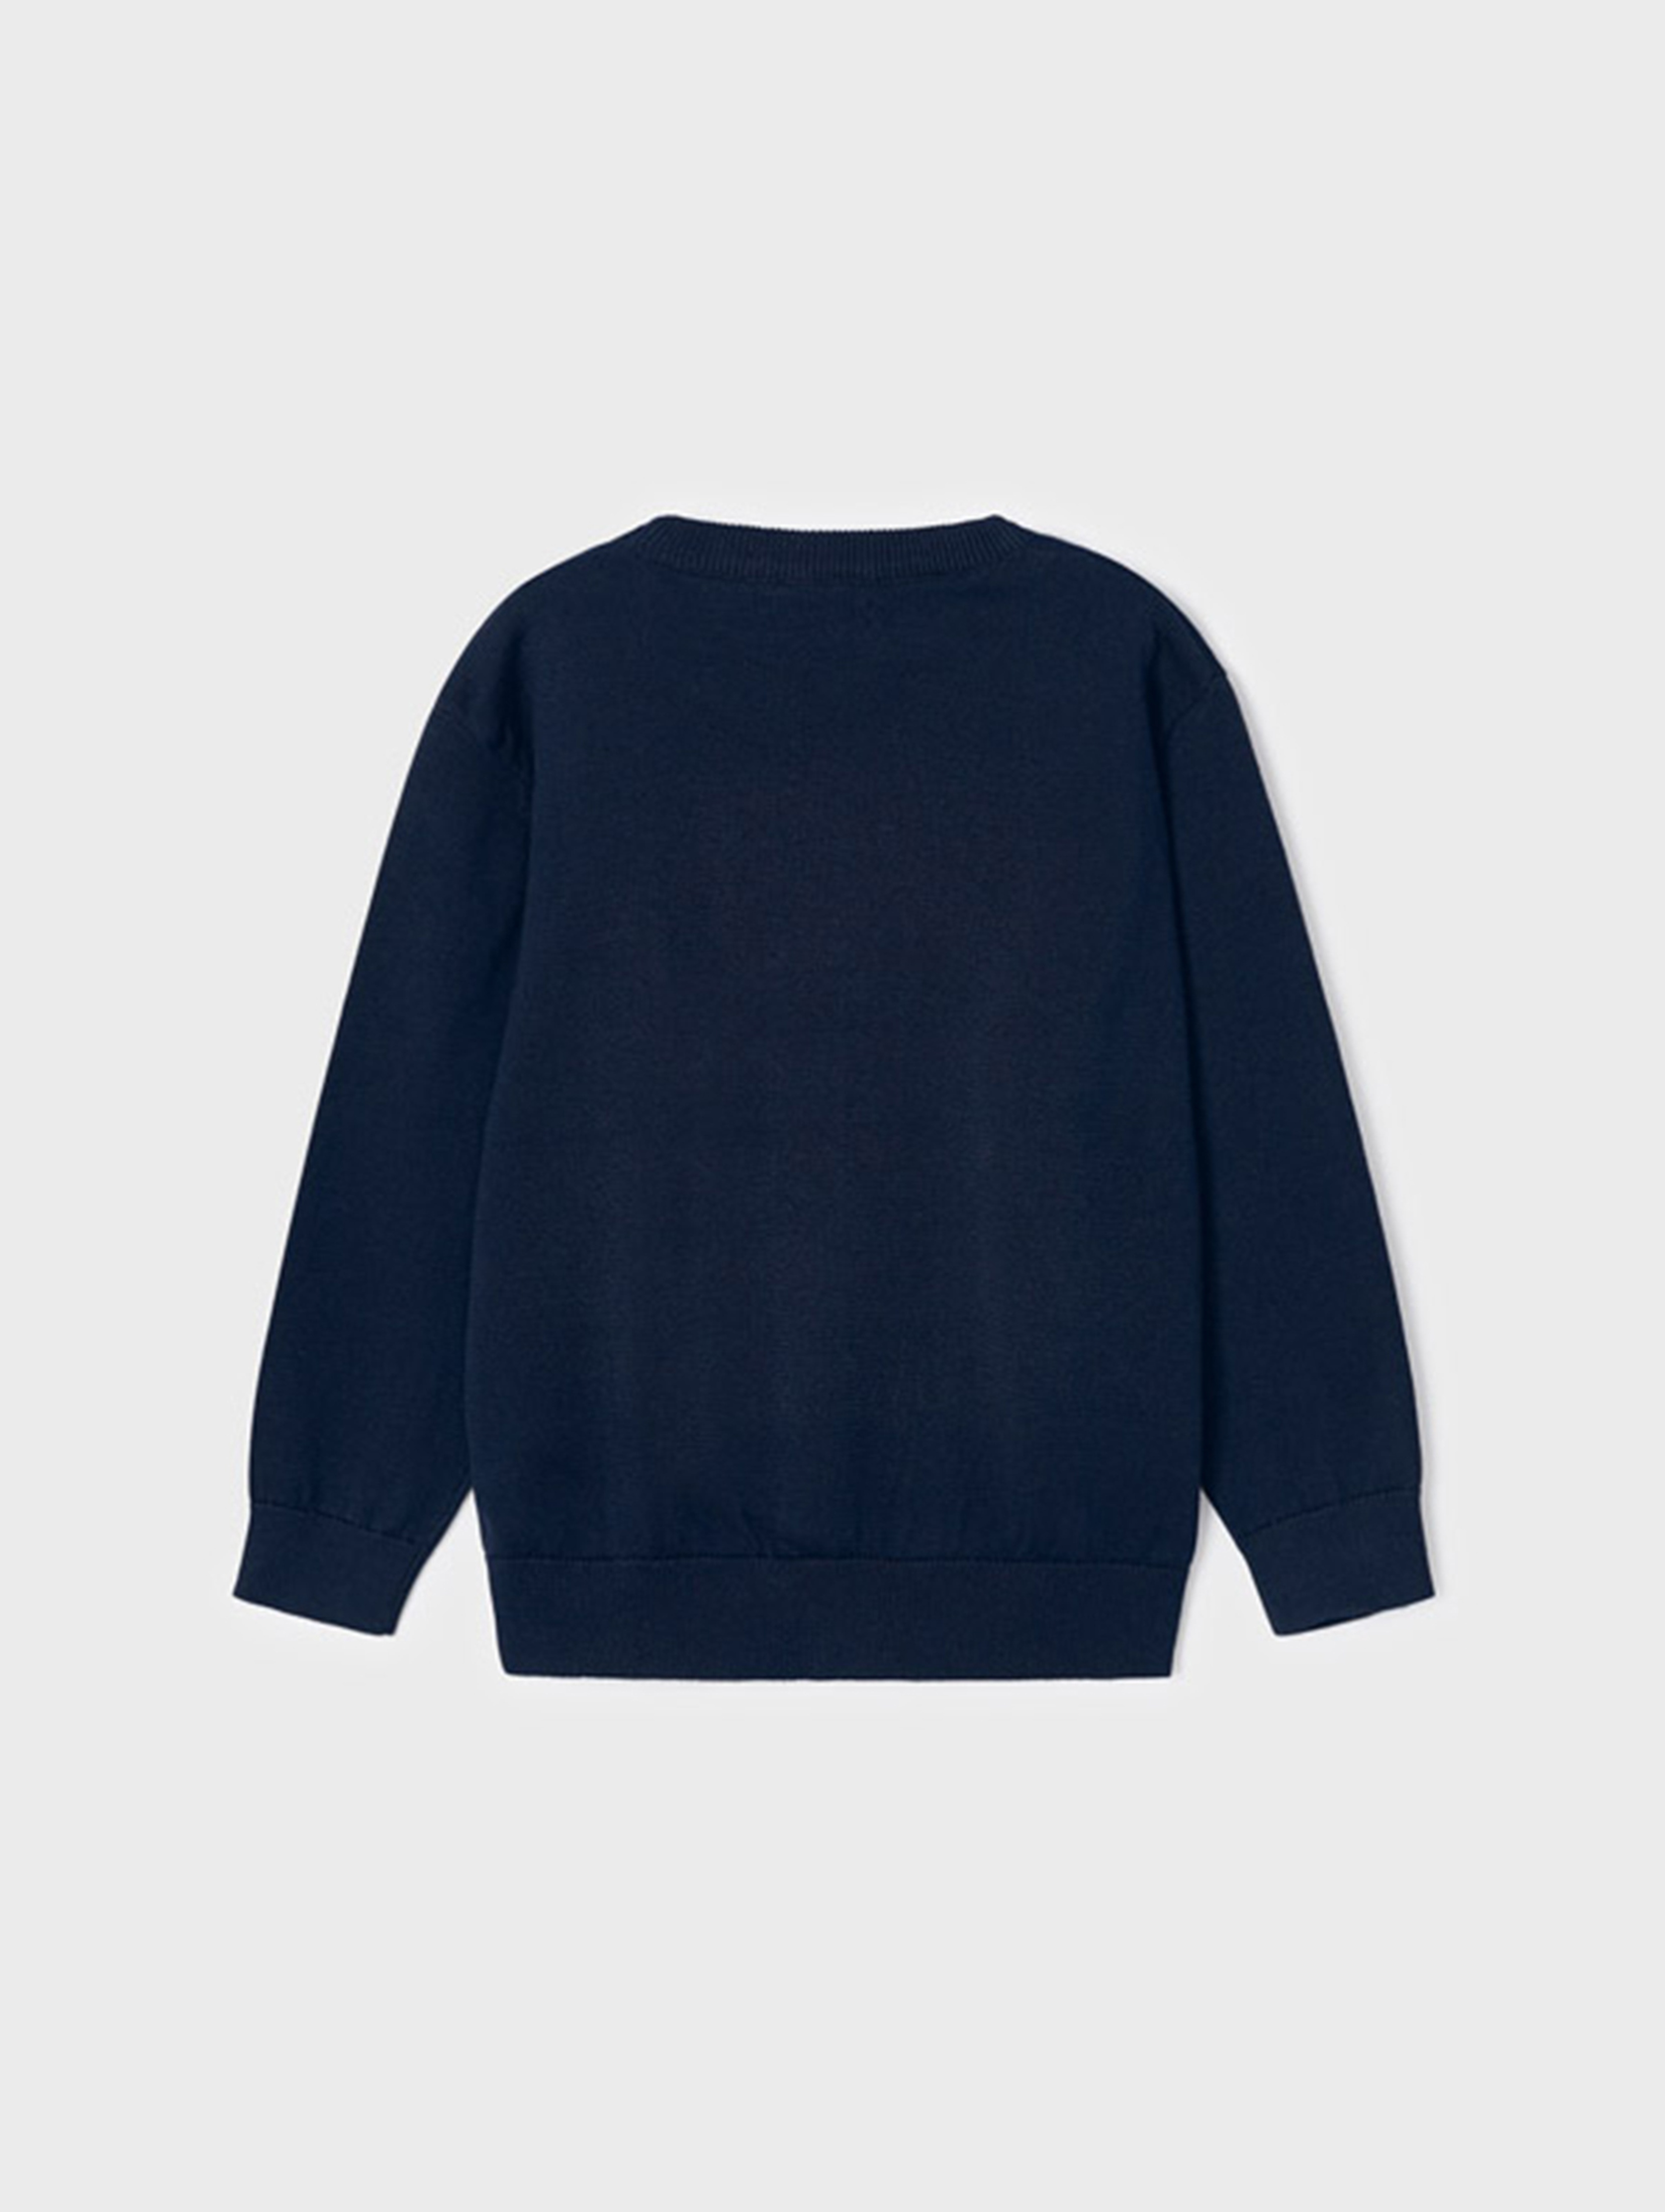 Granatowy bawełniany sweter chłopięcy - Mayoral